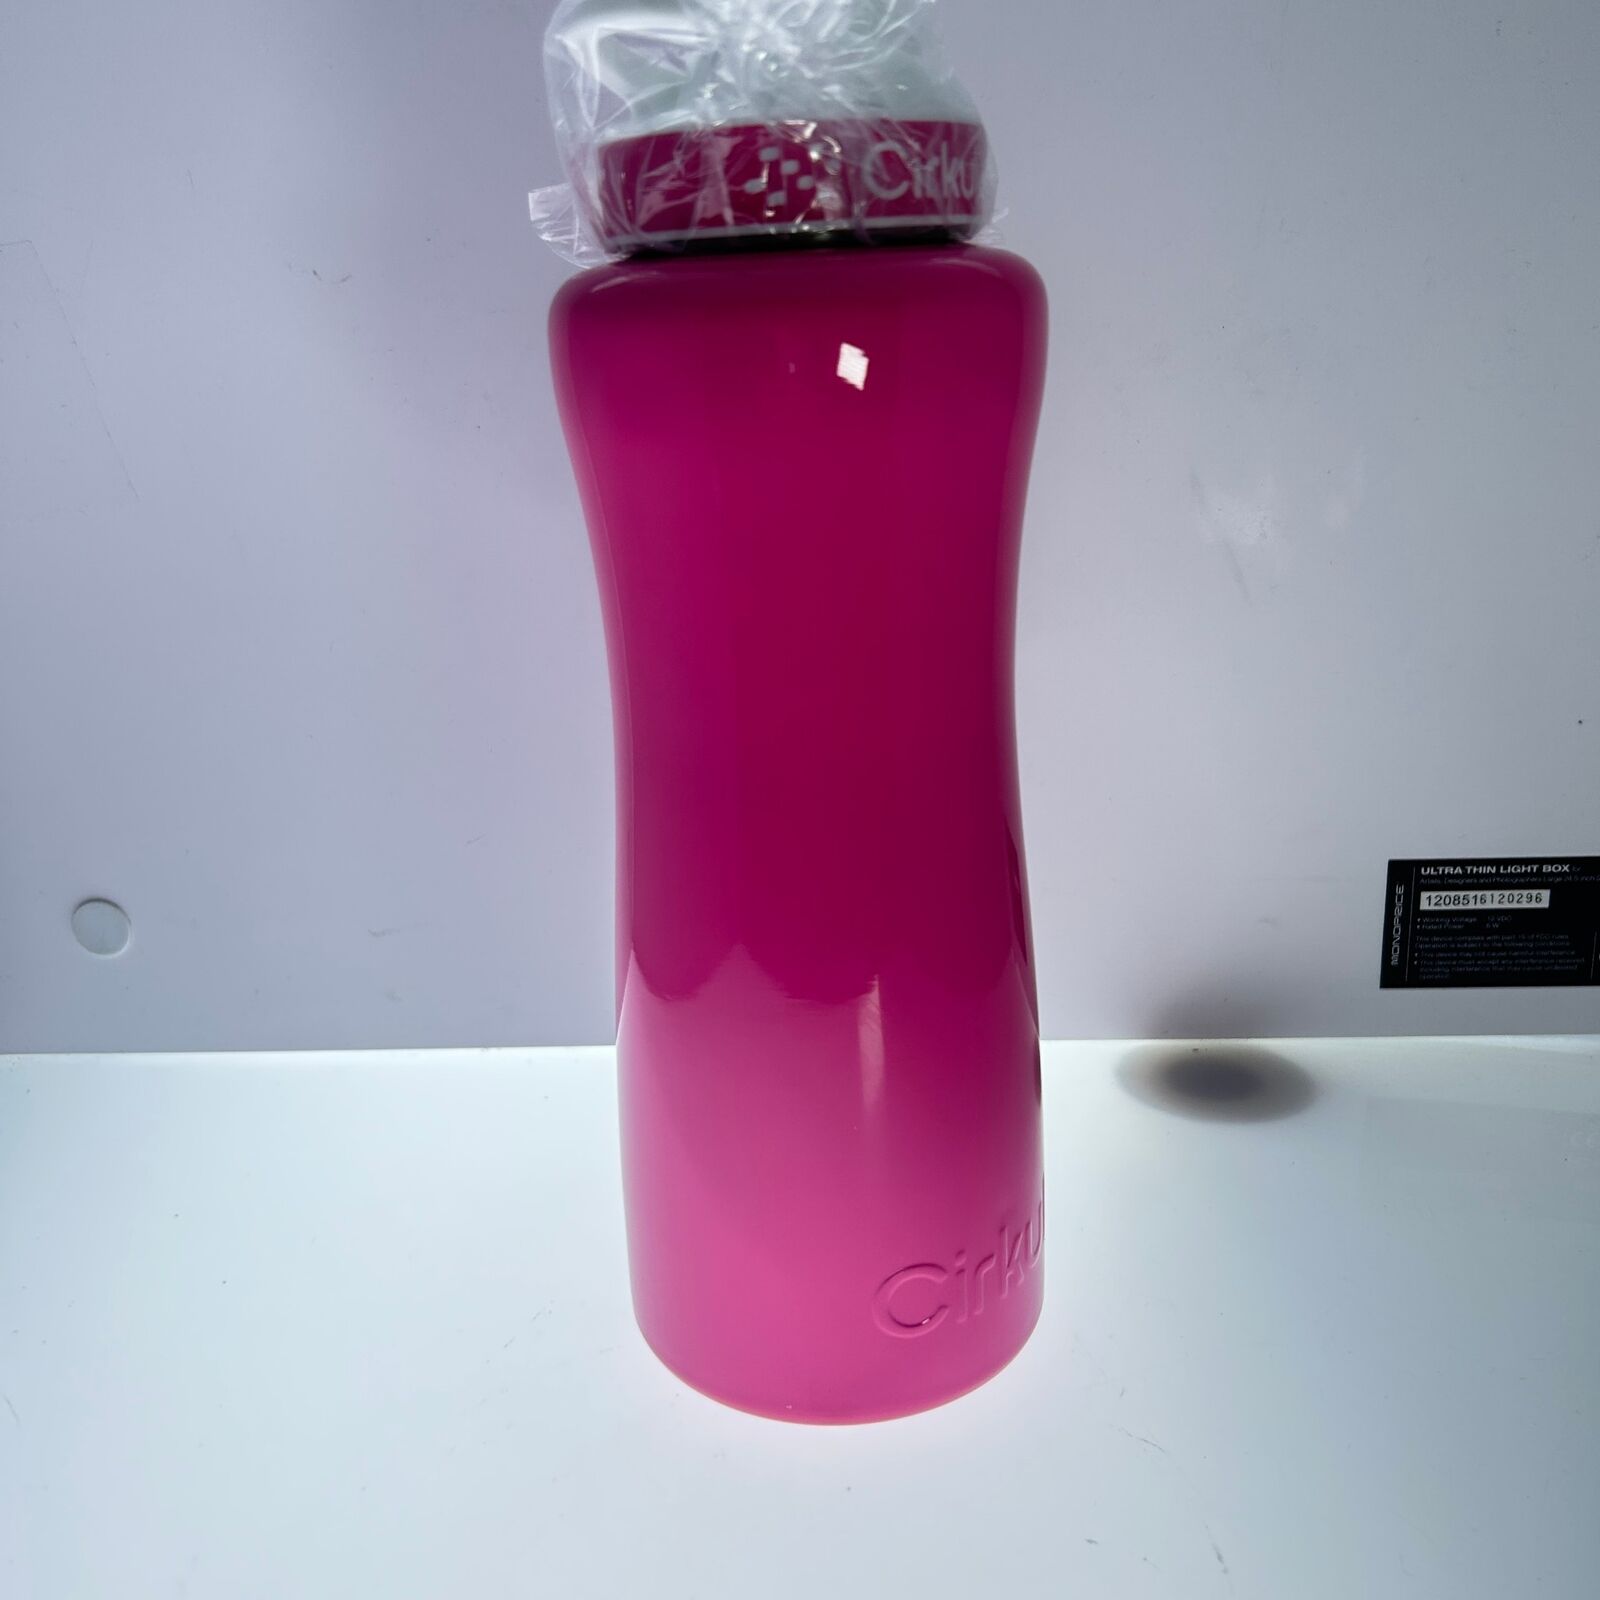 Cirkul Purple Stainless Steel Water Bottle With Purple Grip Lid